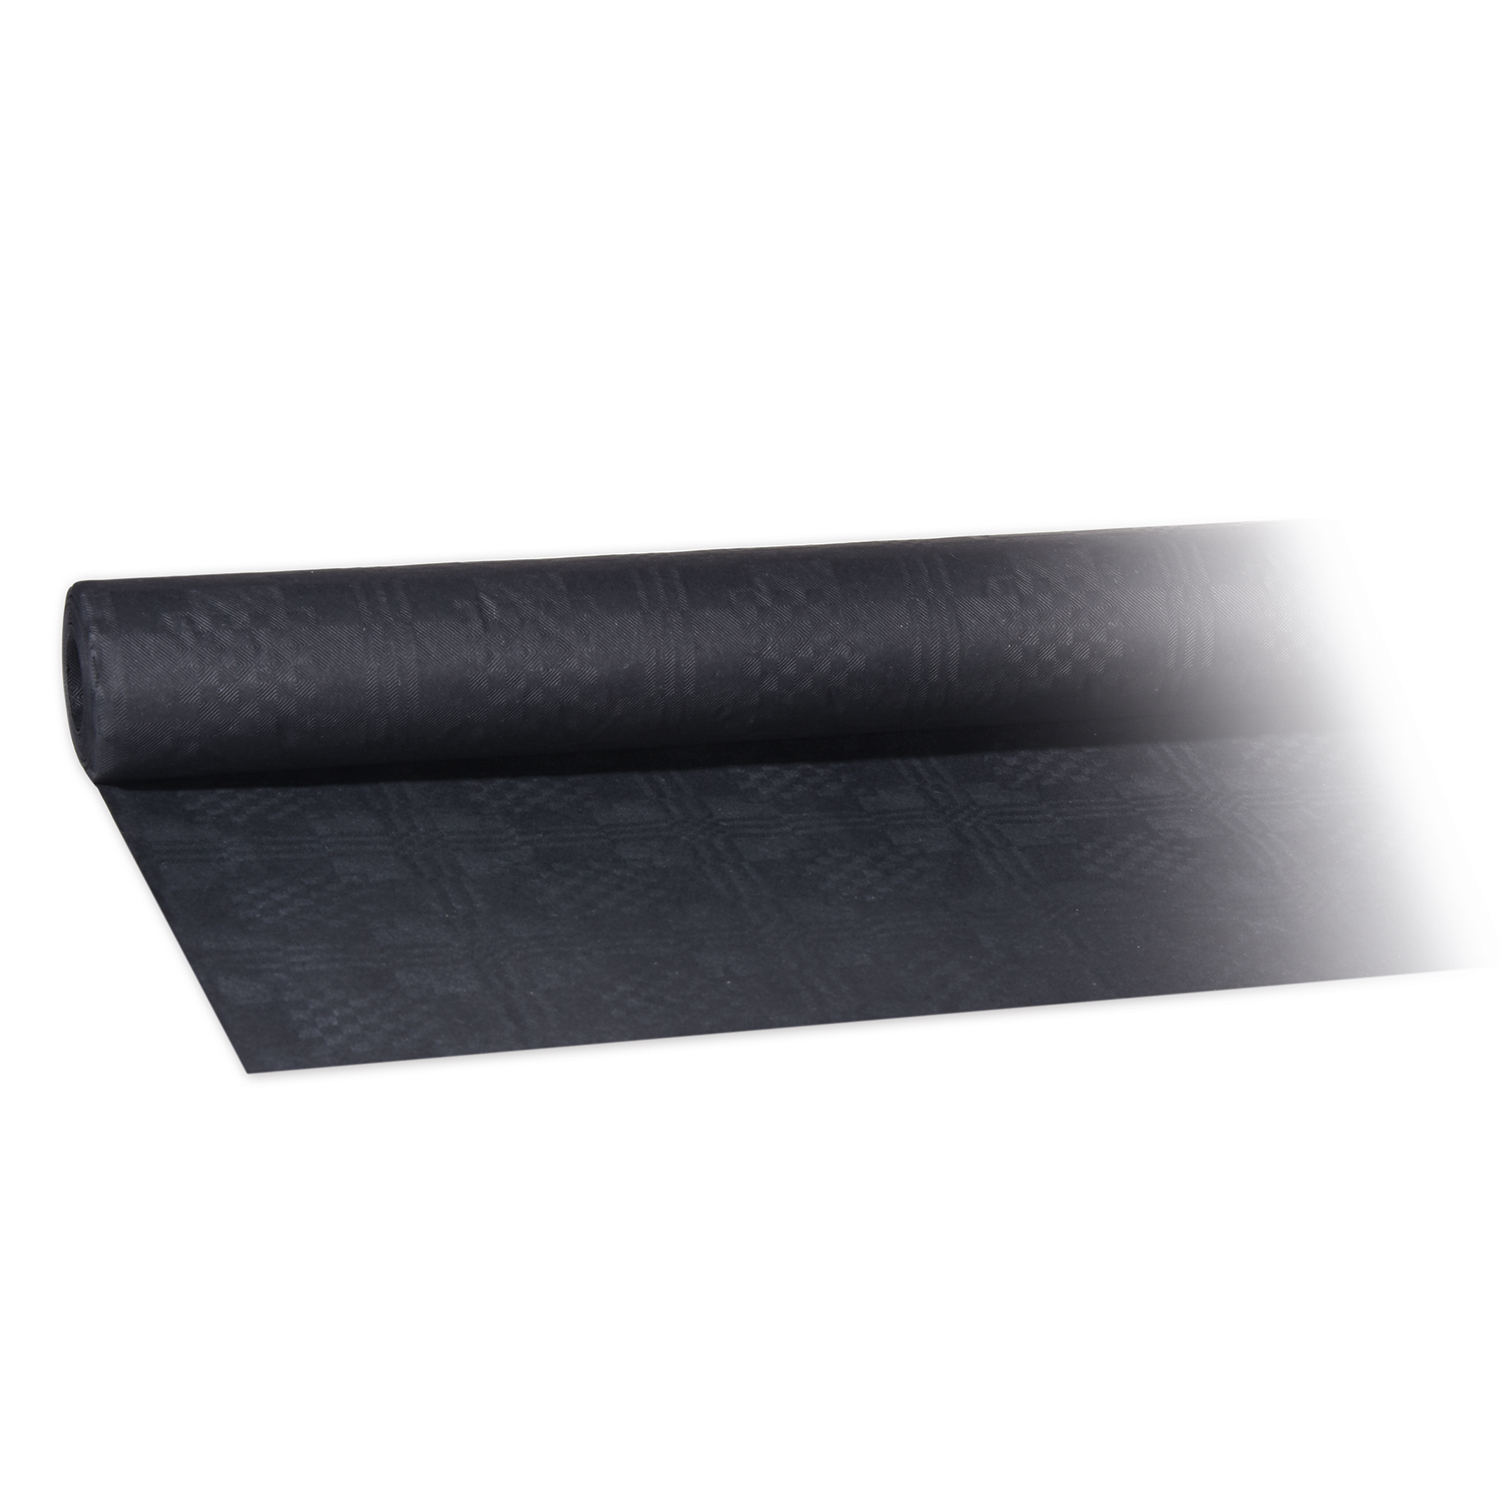 Damasttischtuch (PAP) gerollt schwarz 1,2 x 8 m - 1 Stück